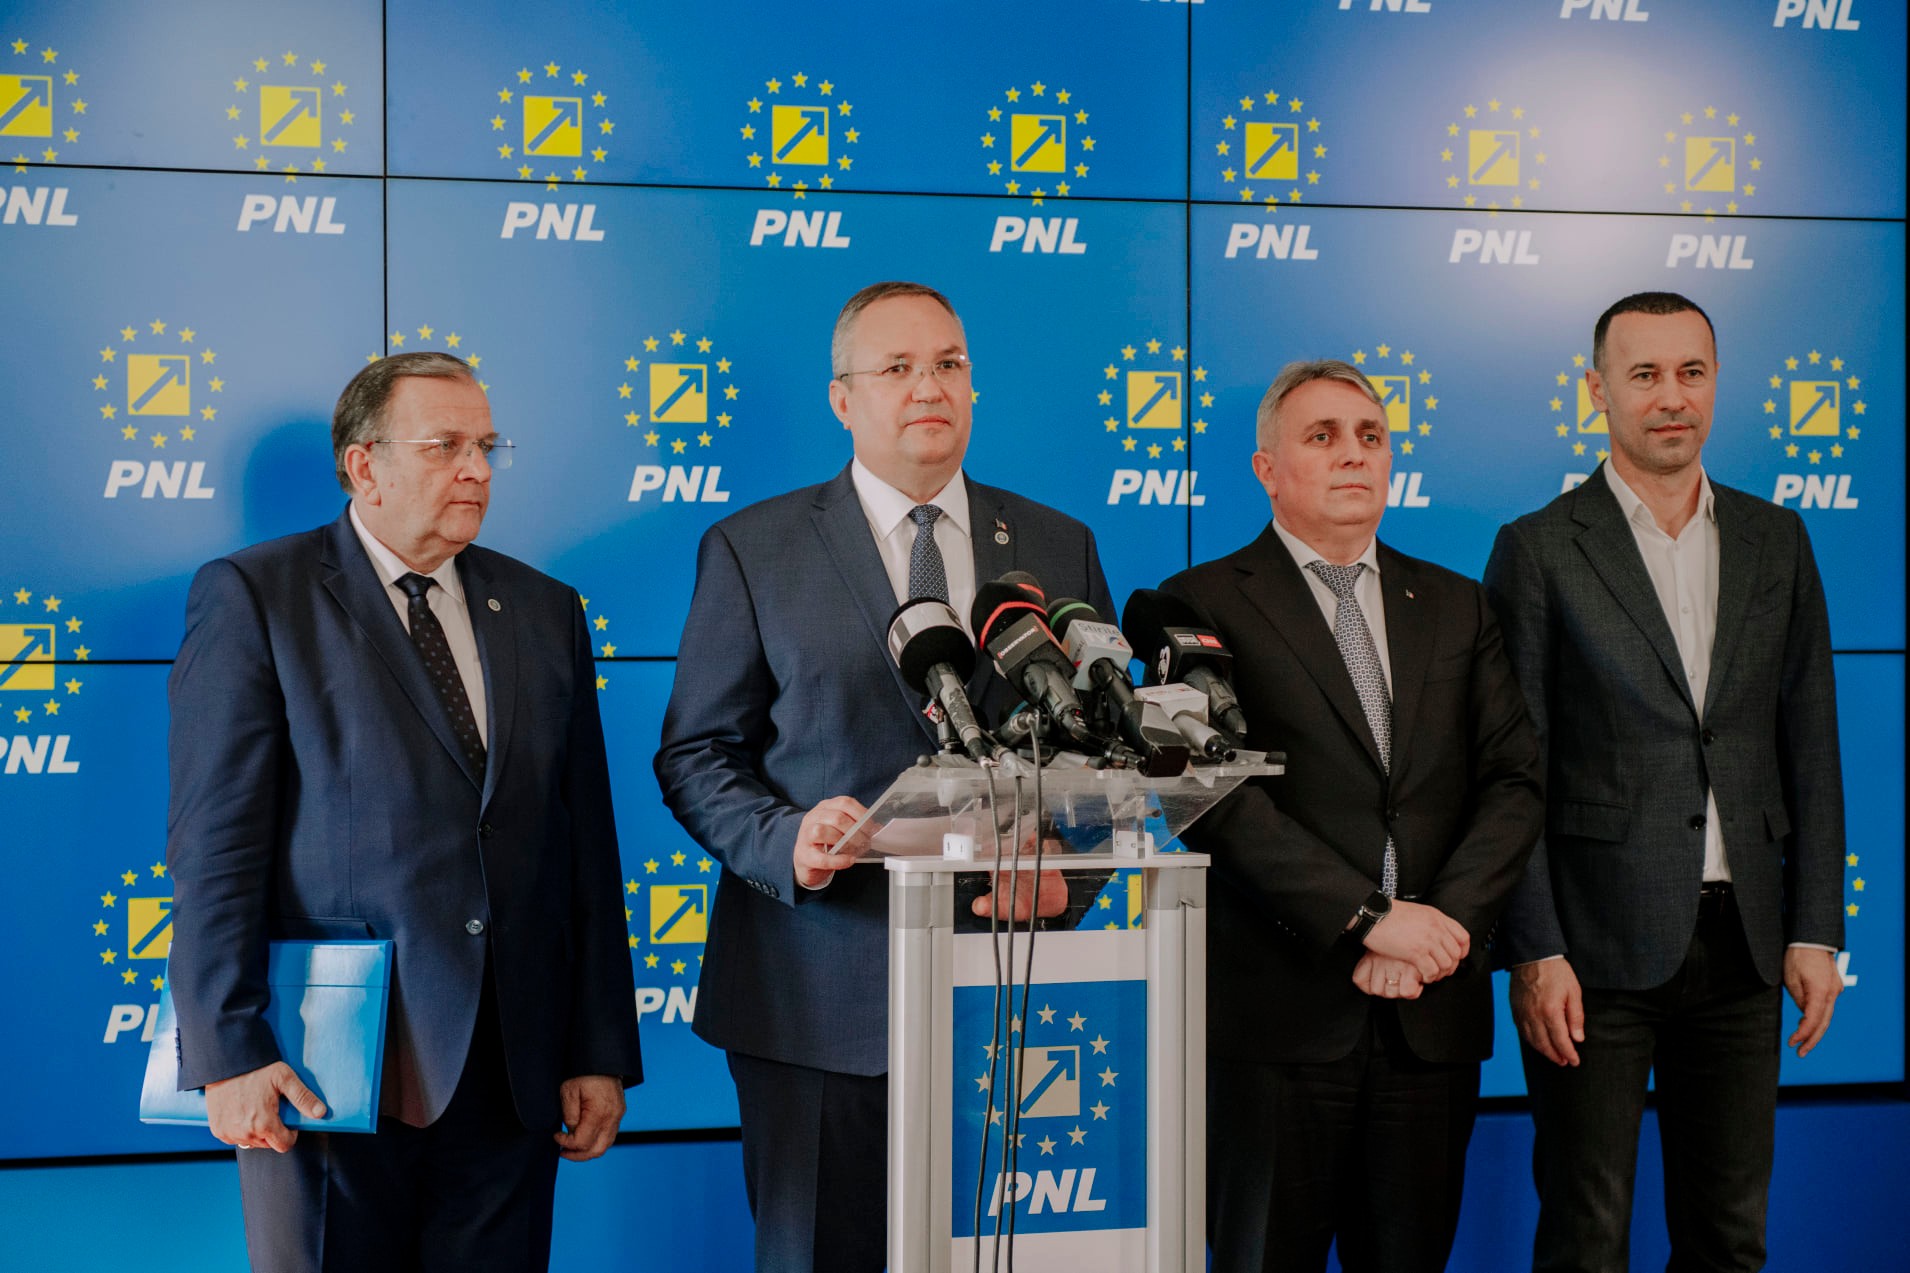 Proaspăt ales preşedinte al PNL, Nicolae Ciucă vorbește despre prezidențiale: ”Candidatul din partea PNL va fi nominalizat de către partid”